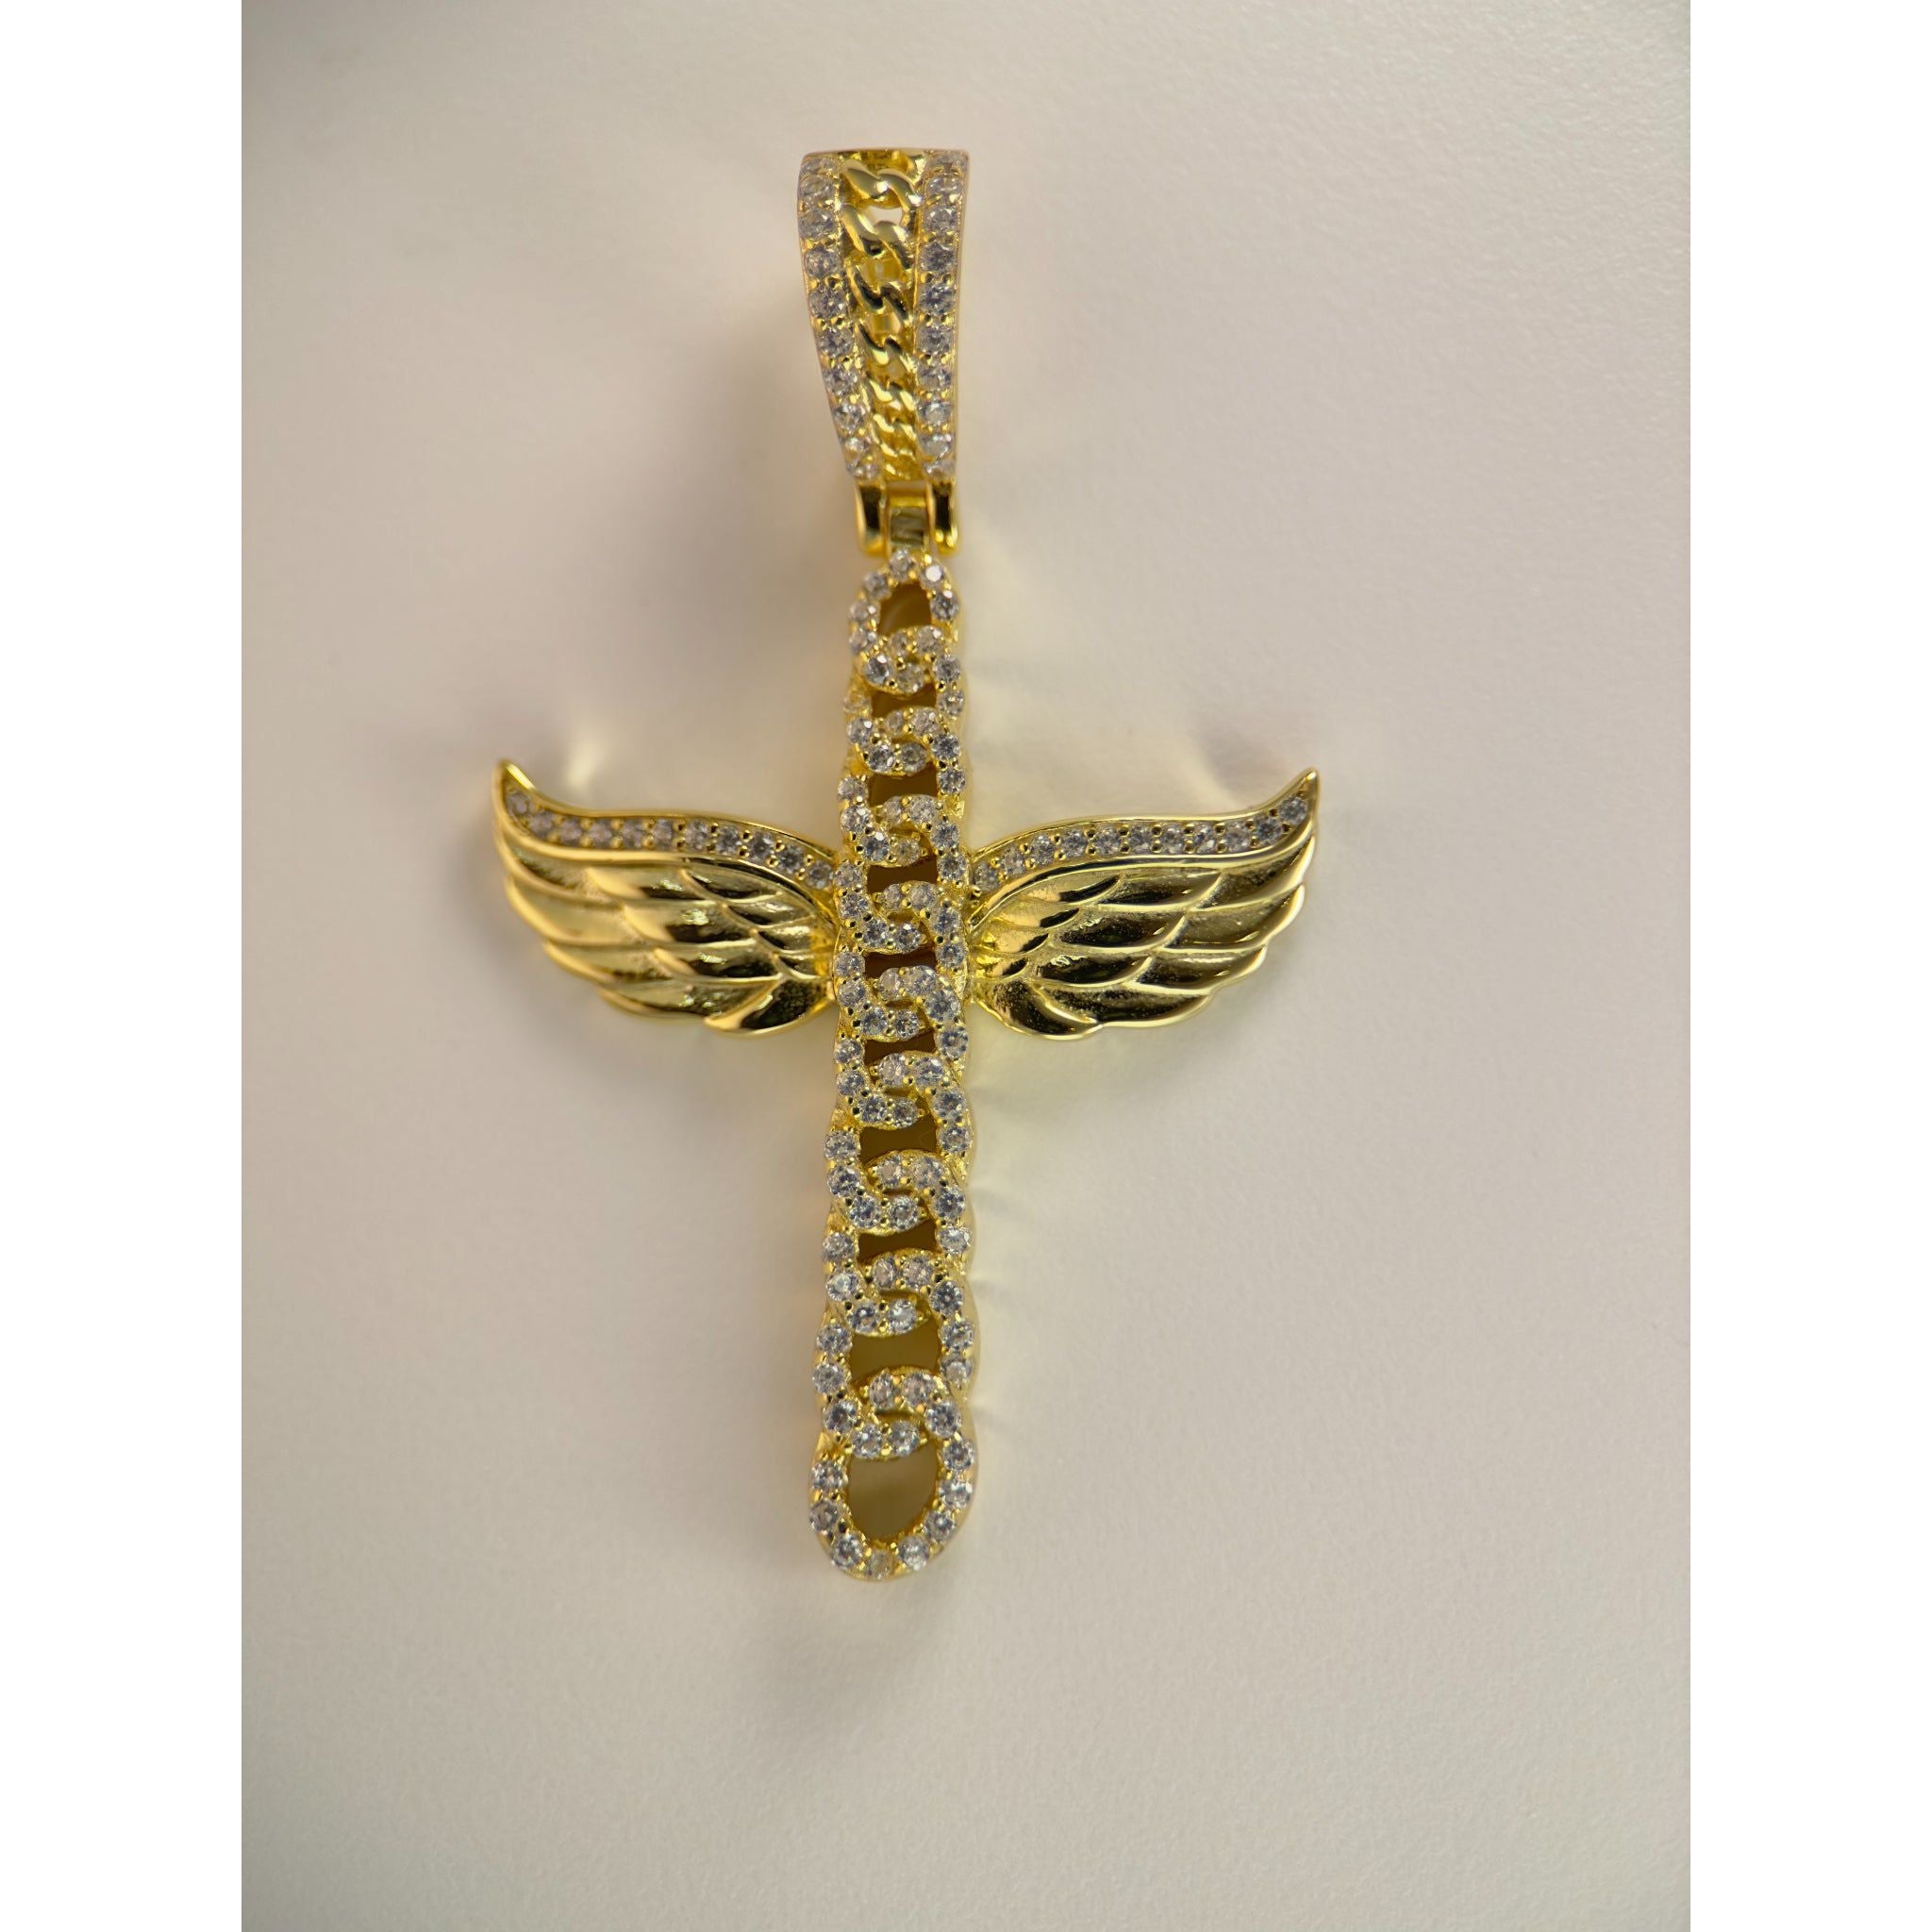 DR3167 - Plata de ley 925, oro de 14 k unido - Piedras creadas en laboratorio - Colgante - Cruz cubana con alas de ángel